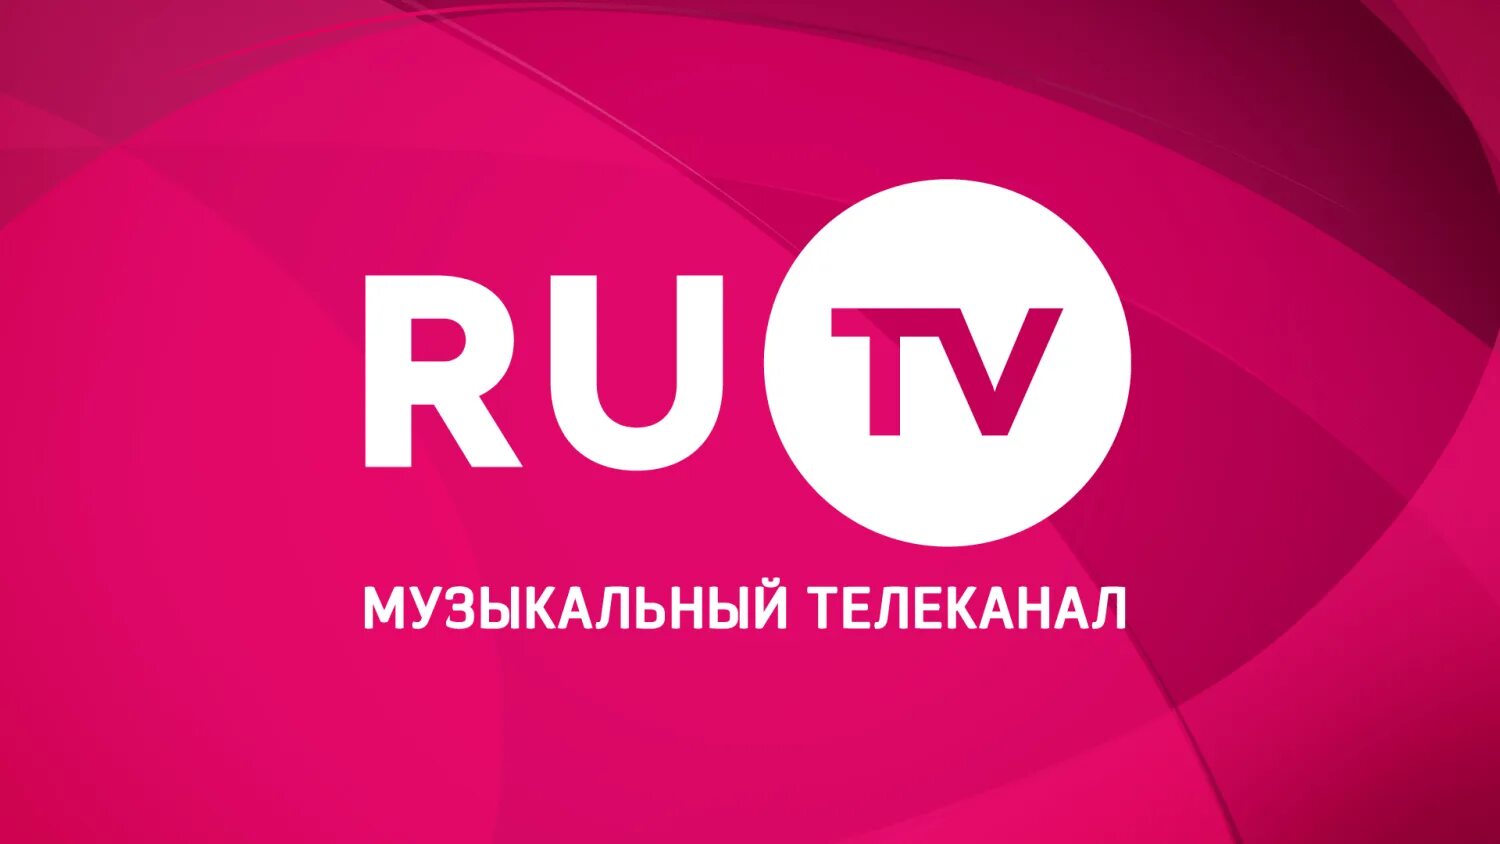 Слушать музыкальный канал. Ру ТВ. Ру ТВ логотип. Телеканал ru TV. Ру ТВ музыкальный канал.